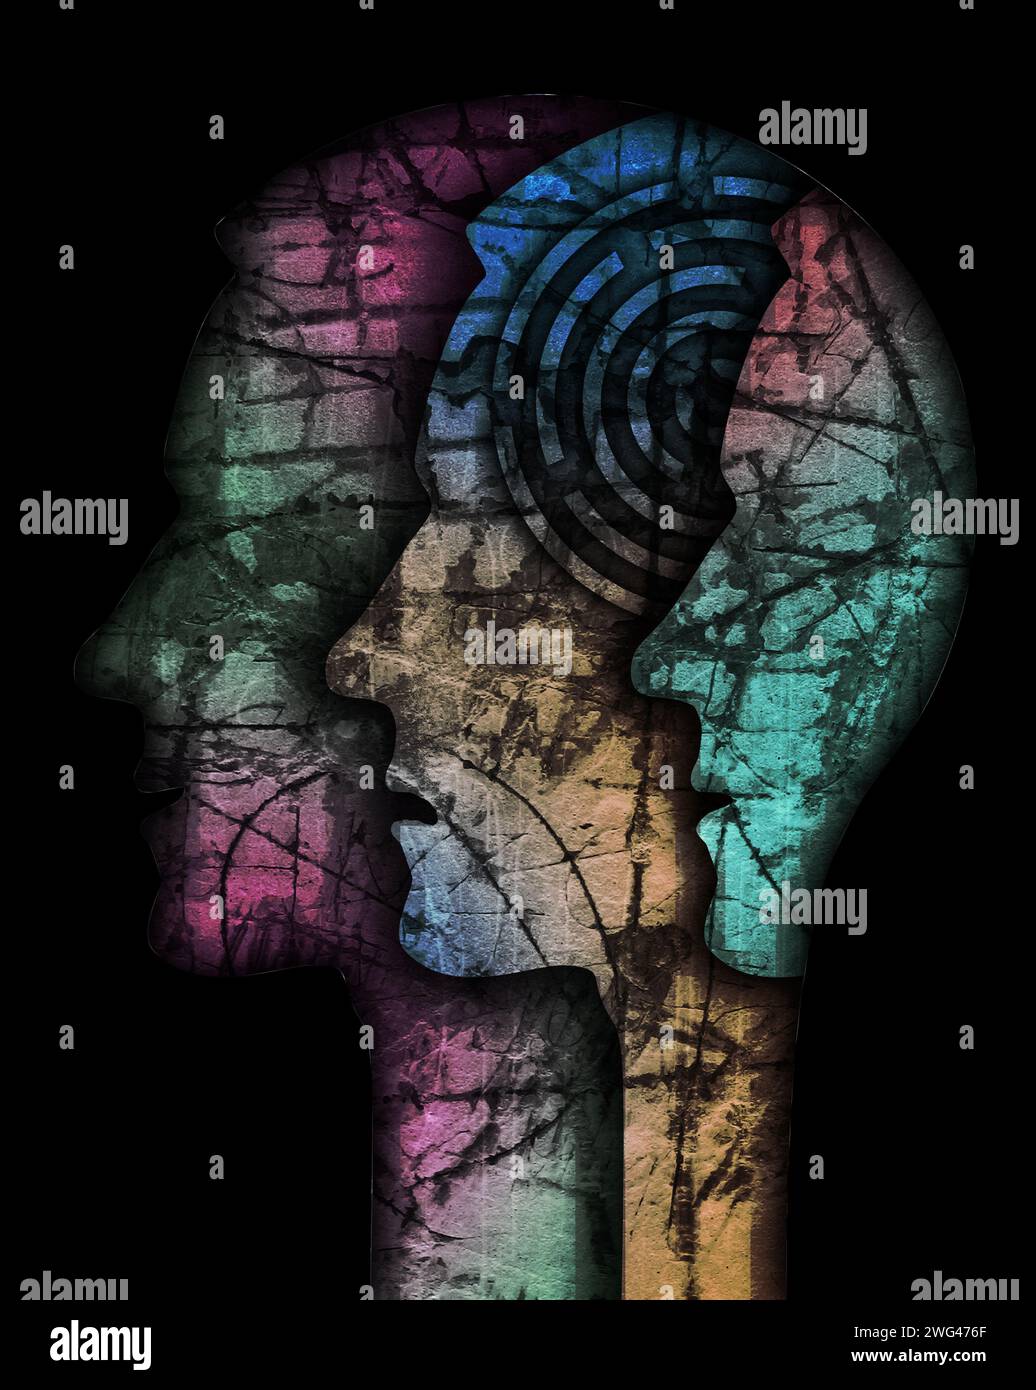 Schizophrenie männlichen Kopf Silhouette. Illustration mit drei stilisierten männlichen Köpfen auf Grunge-Textur, die die Schizophrenie-Depression symbolisiert. Stockfoto